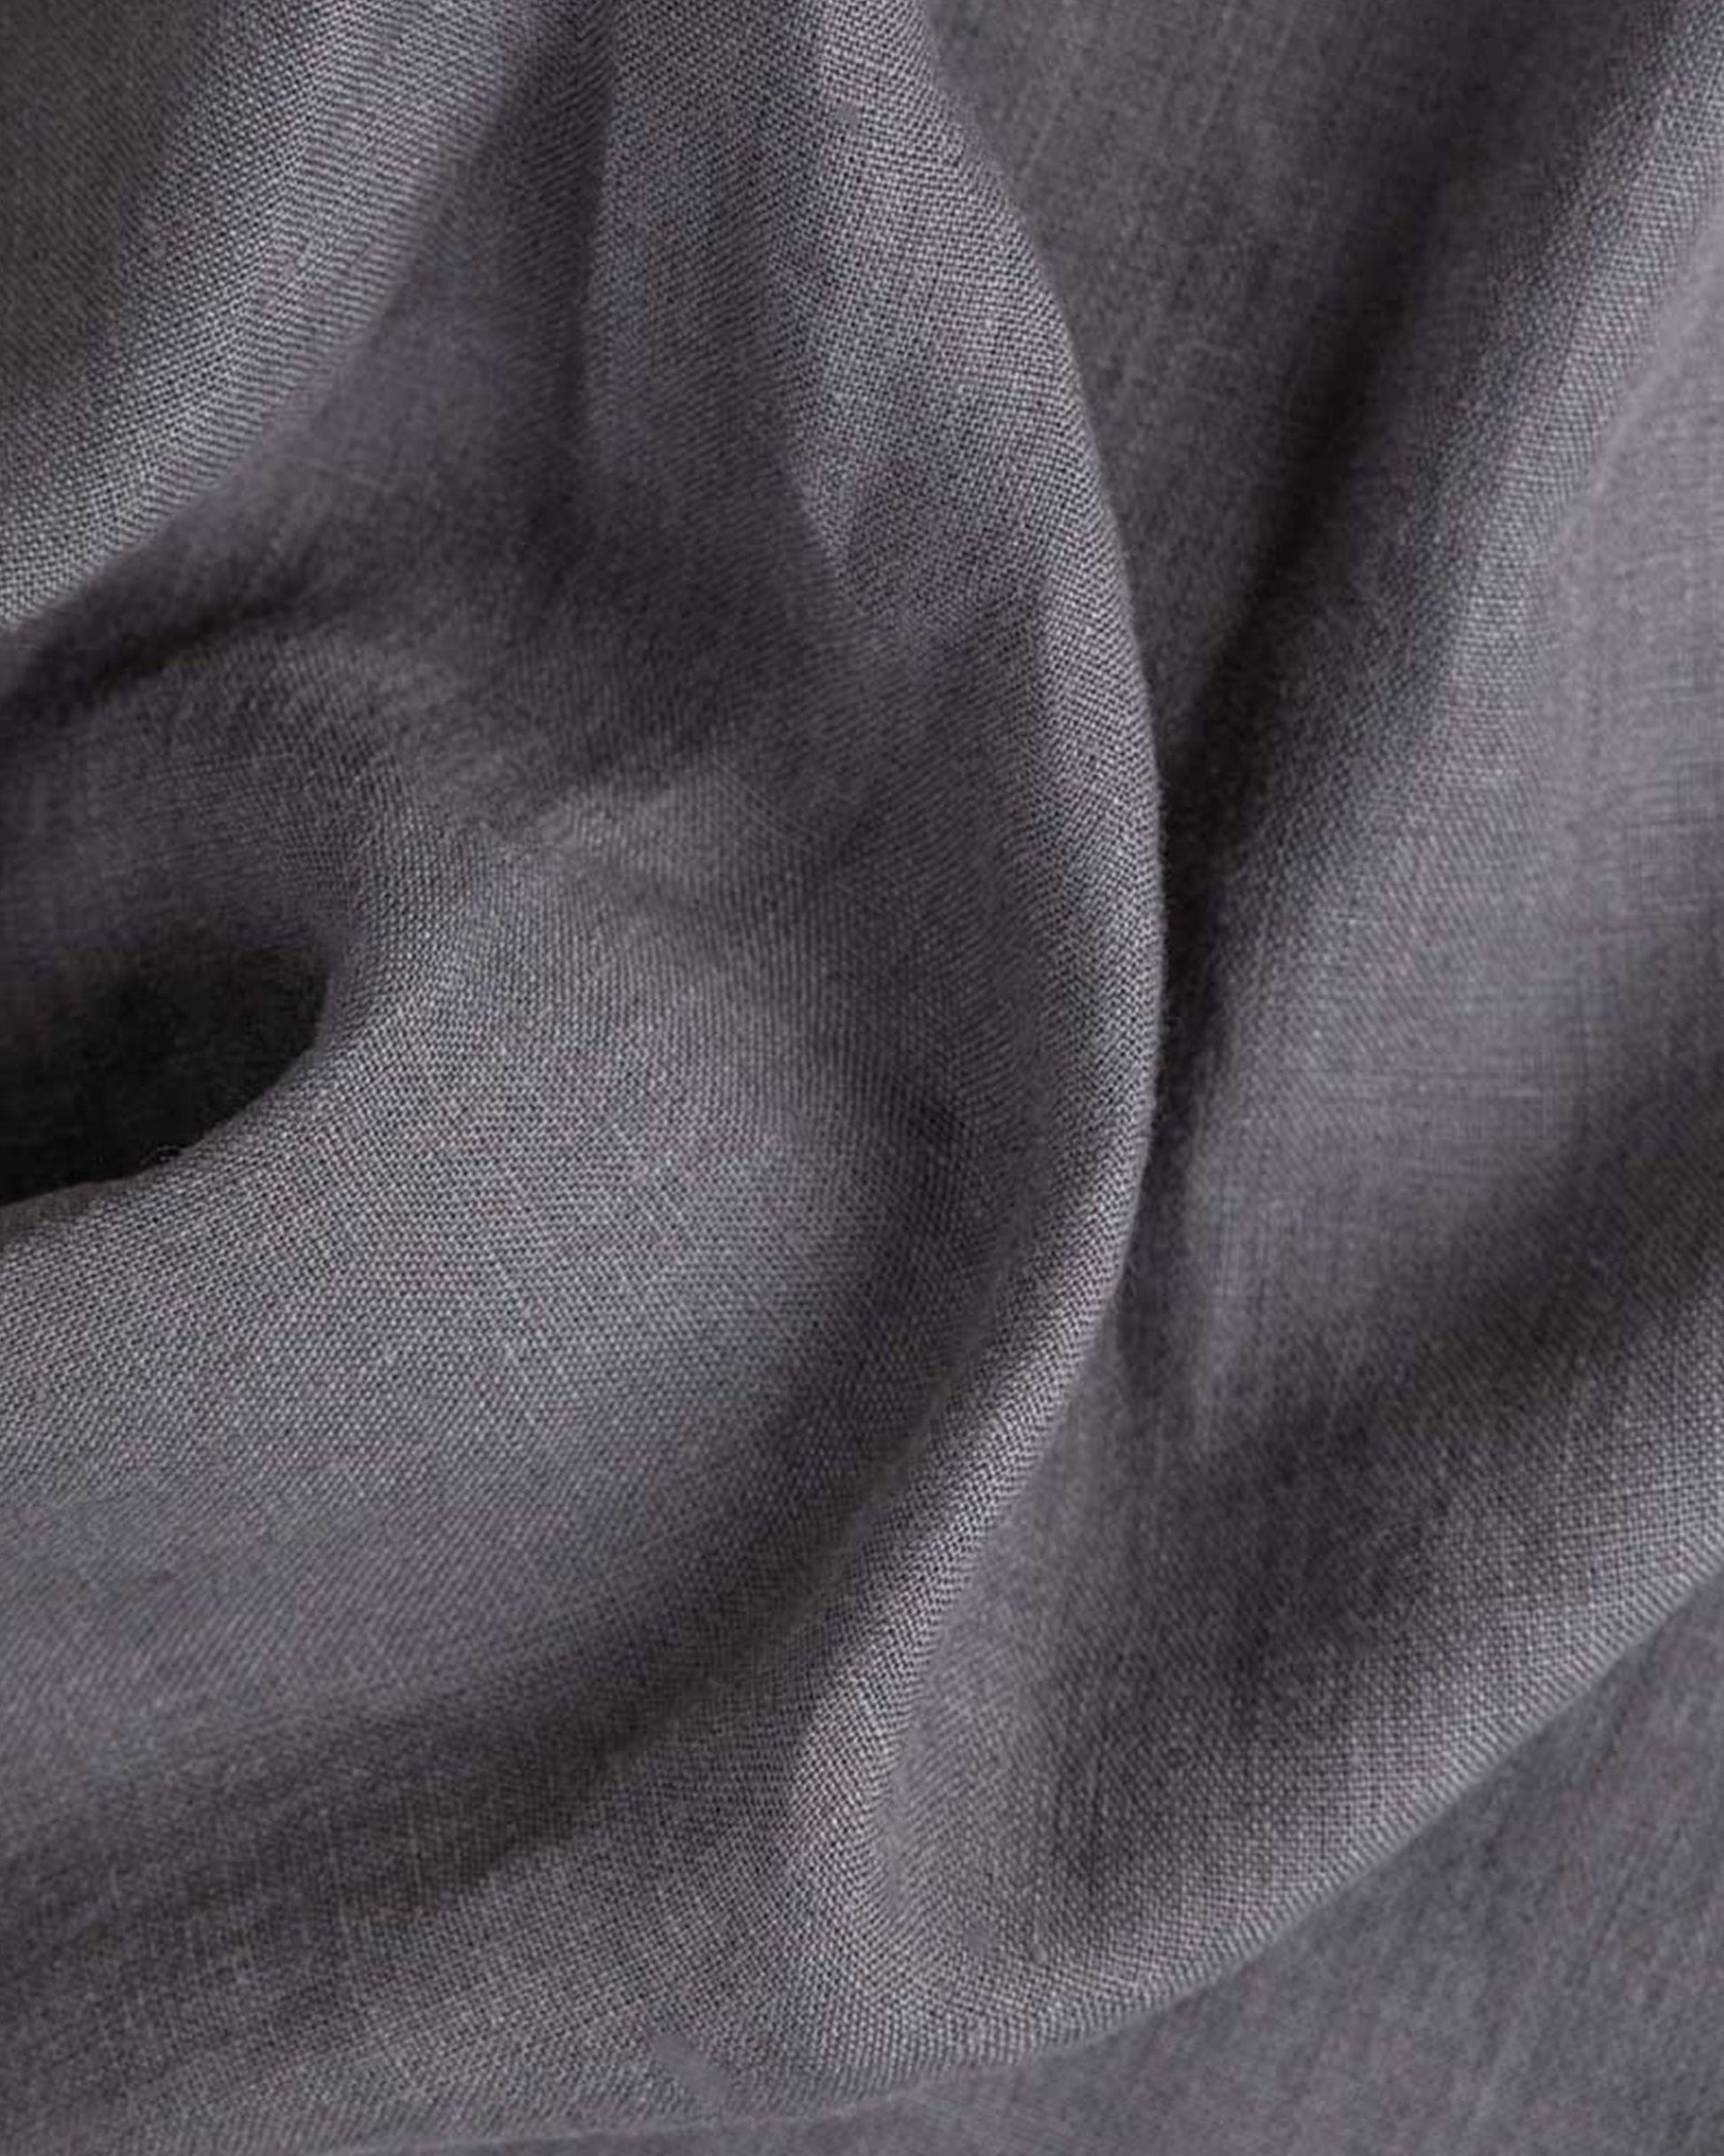 Charcoal gray linen fitted sheet - MagicLinen